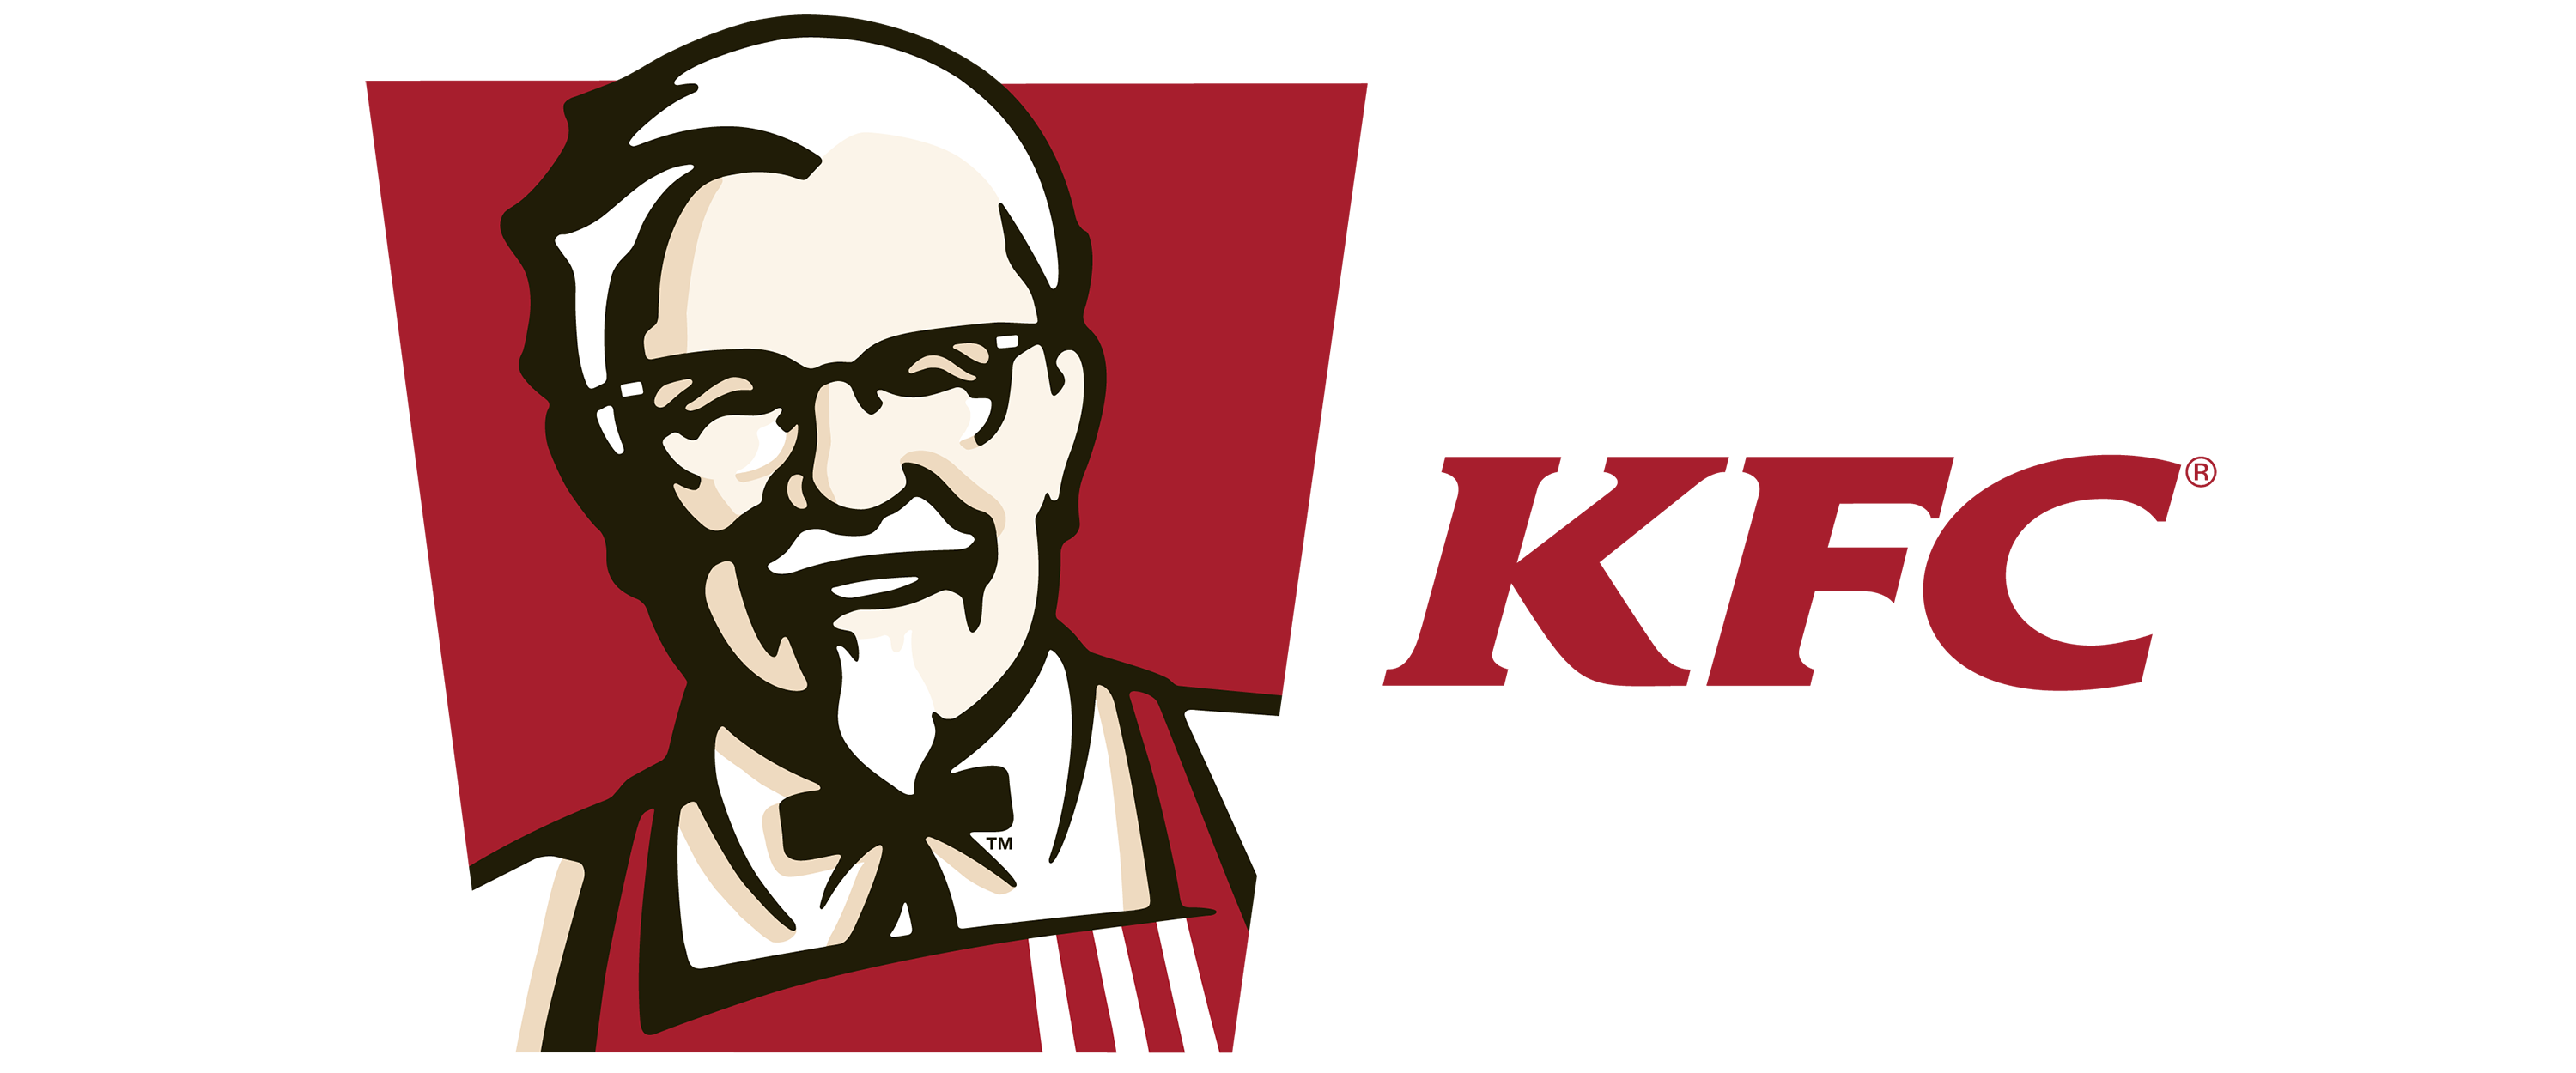 Kfc-logo